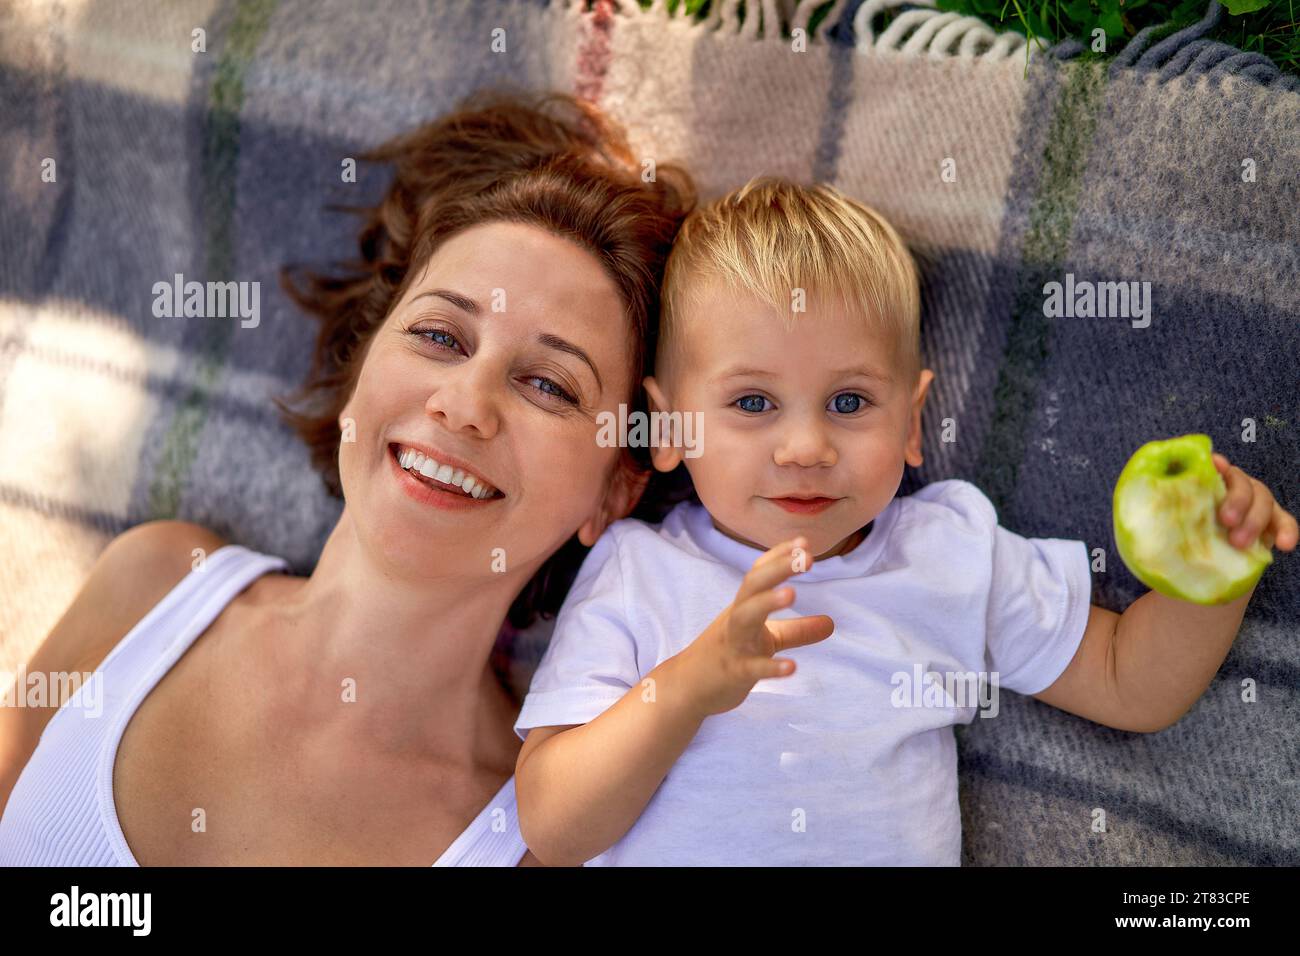 Eine junge europäische Mutter mit ihrem niedlichen kleinen Sohn, der auf dem Bett liegt, kariert und in die Kamera lächelt, von oben. Ein Kind hat einen gebissenen grünen Apfel in der Hand. Das Konzept der Erziehung und des gemeinsamen Zeitverhaltens in der Natur. Das Glück der Mutterschaft, Blick von oben Stockfoto